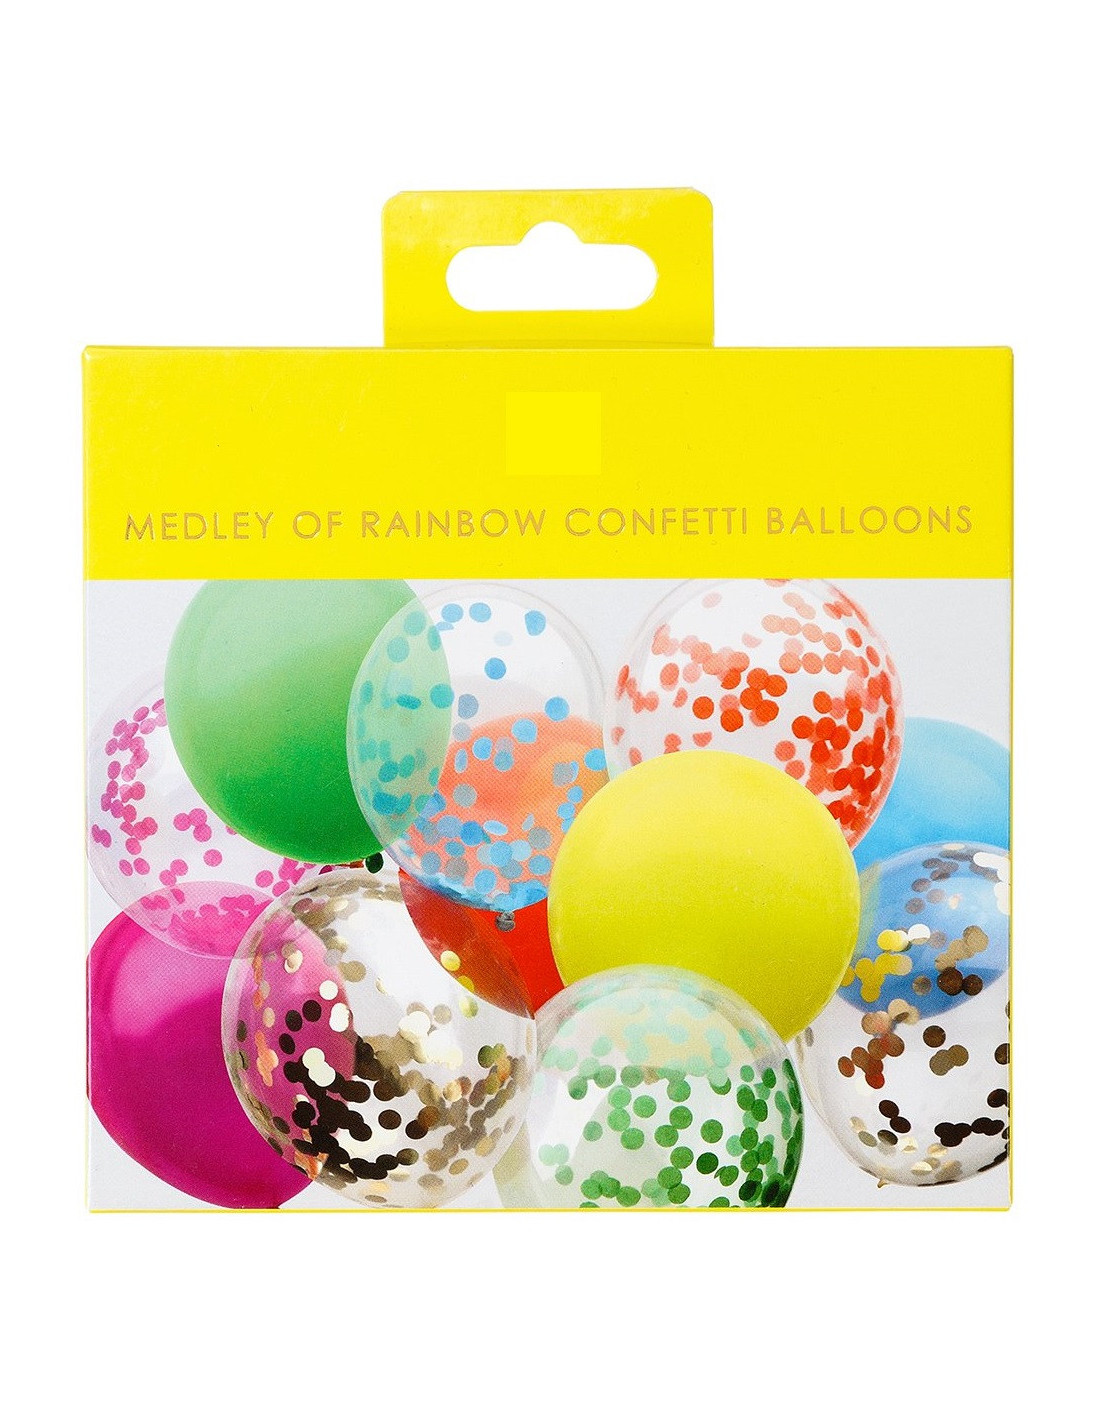 Kit 5 Ballons Anniversaire Licorne - Les Bambetises